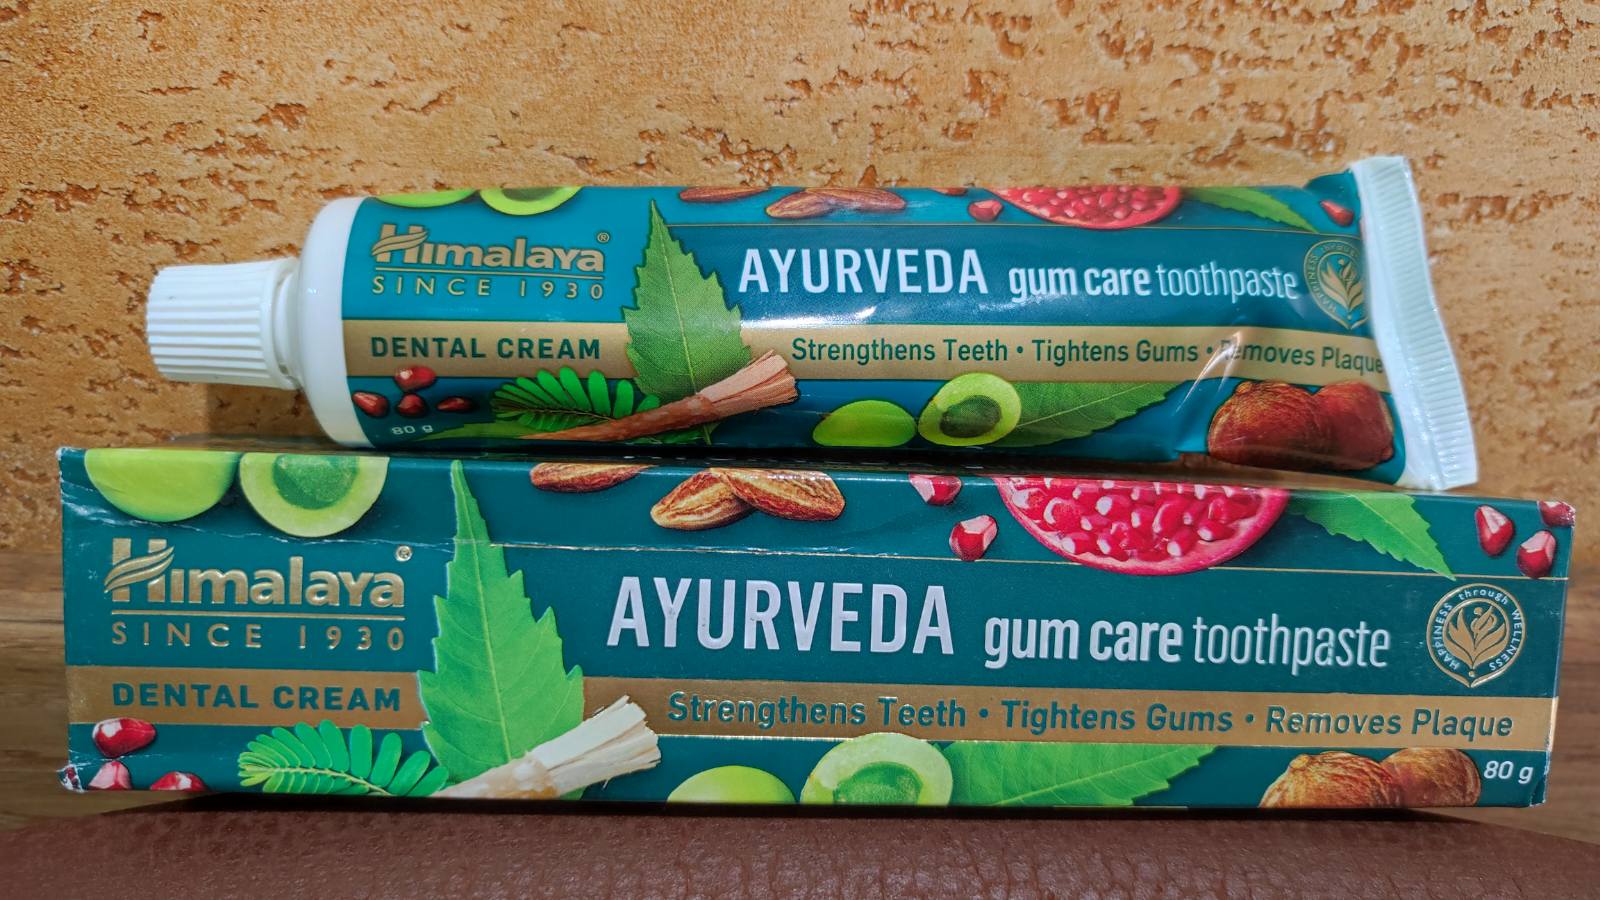 Зубная паста Хималая Himalaya Dental Cream 80 гр от кровоточивости десен Освежает дыхание Защищает Укрепляет Индия